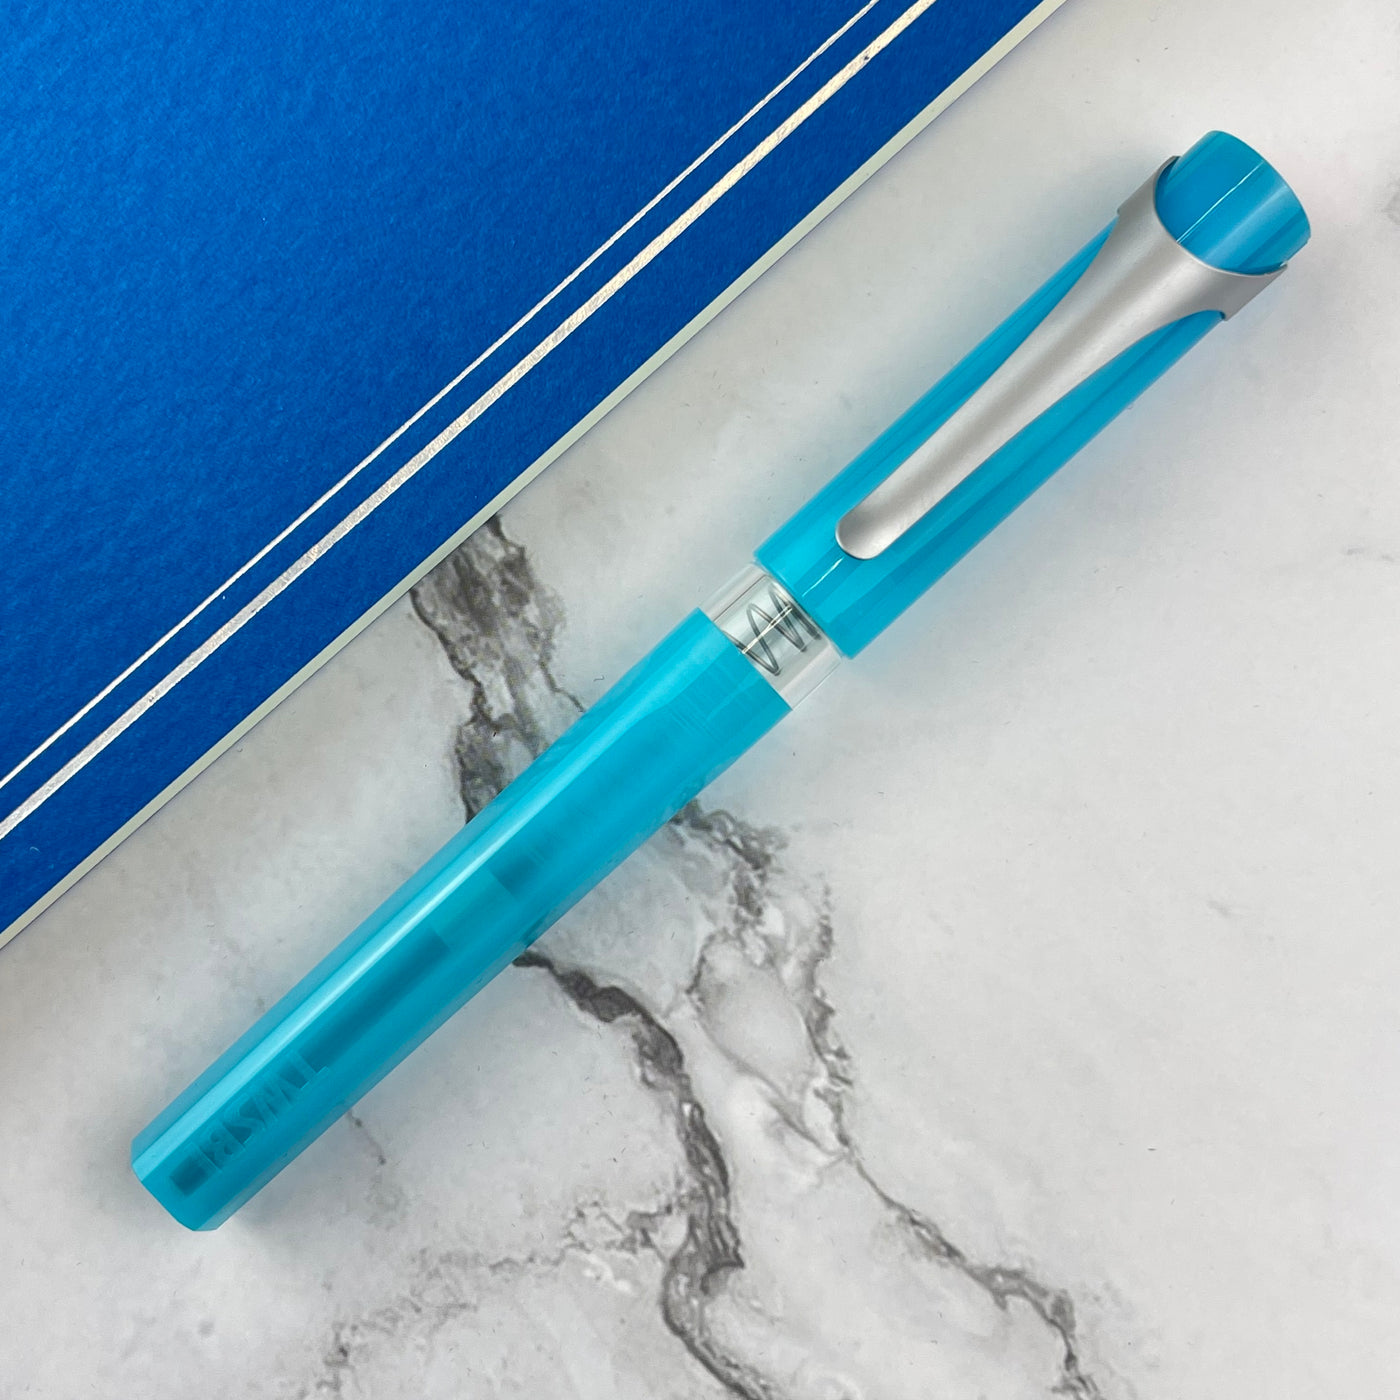 TWSBI Swipe Fountain Pen - Ice Blue